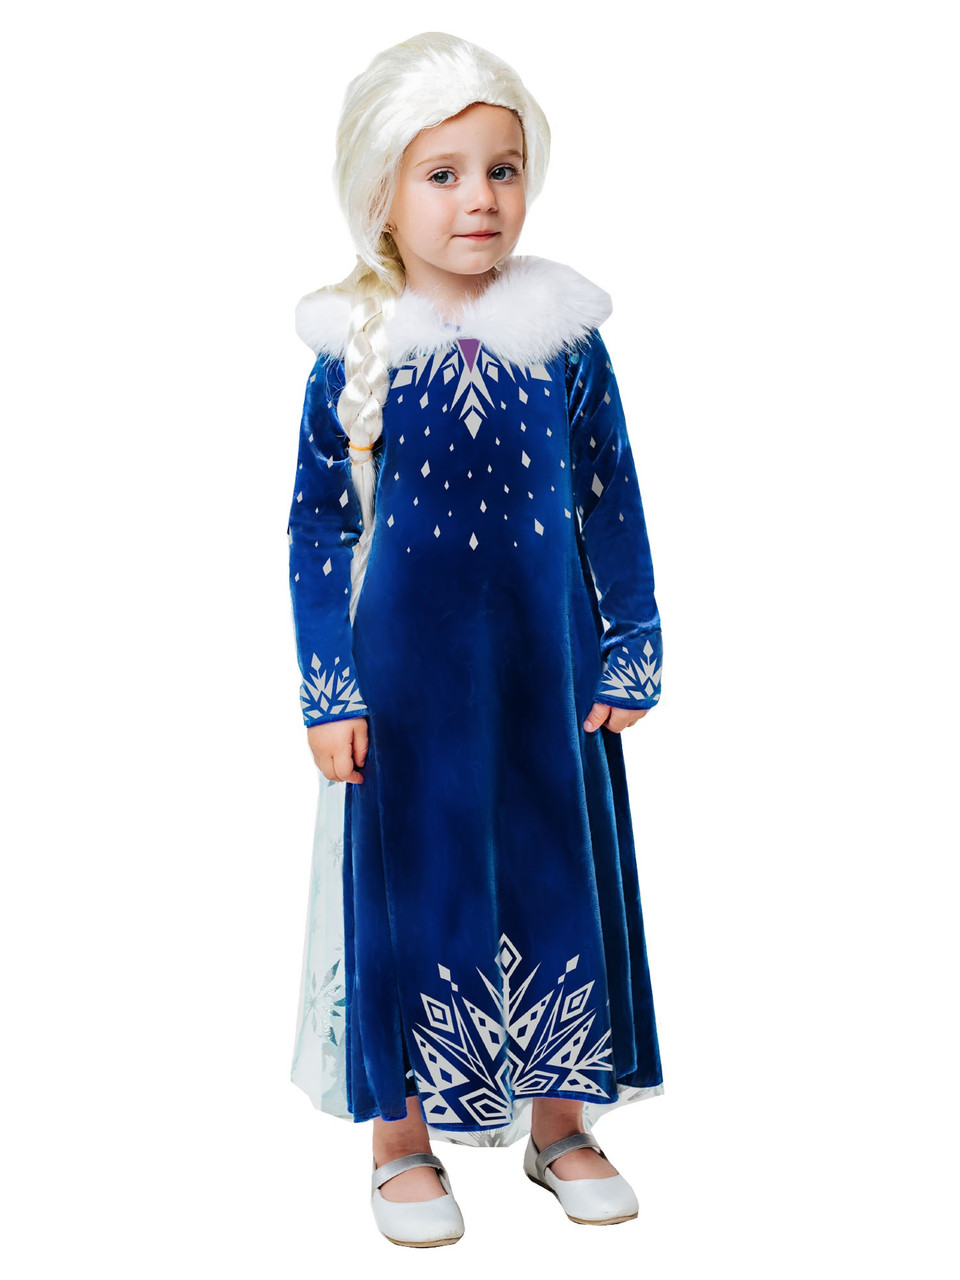 Карнавальный костюм детский Эльза зимнее платье Пуговка 9004 к-21, фото 1